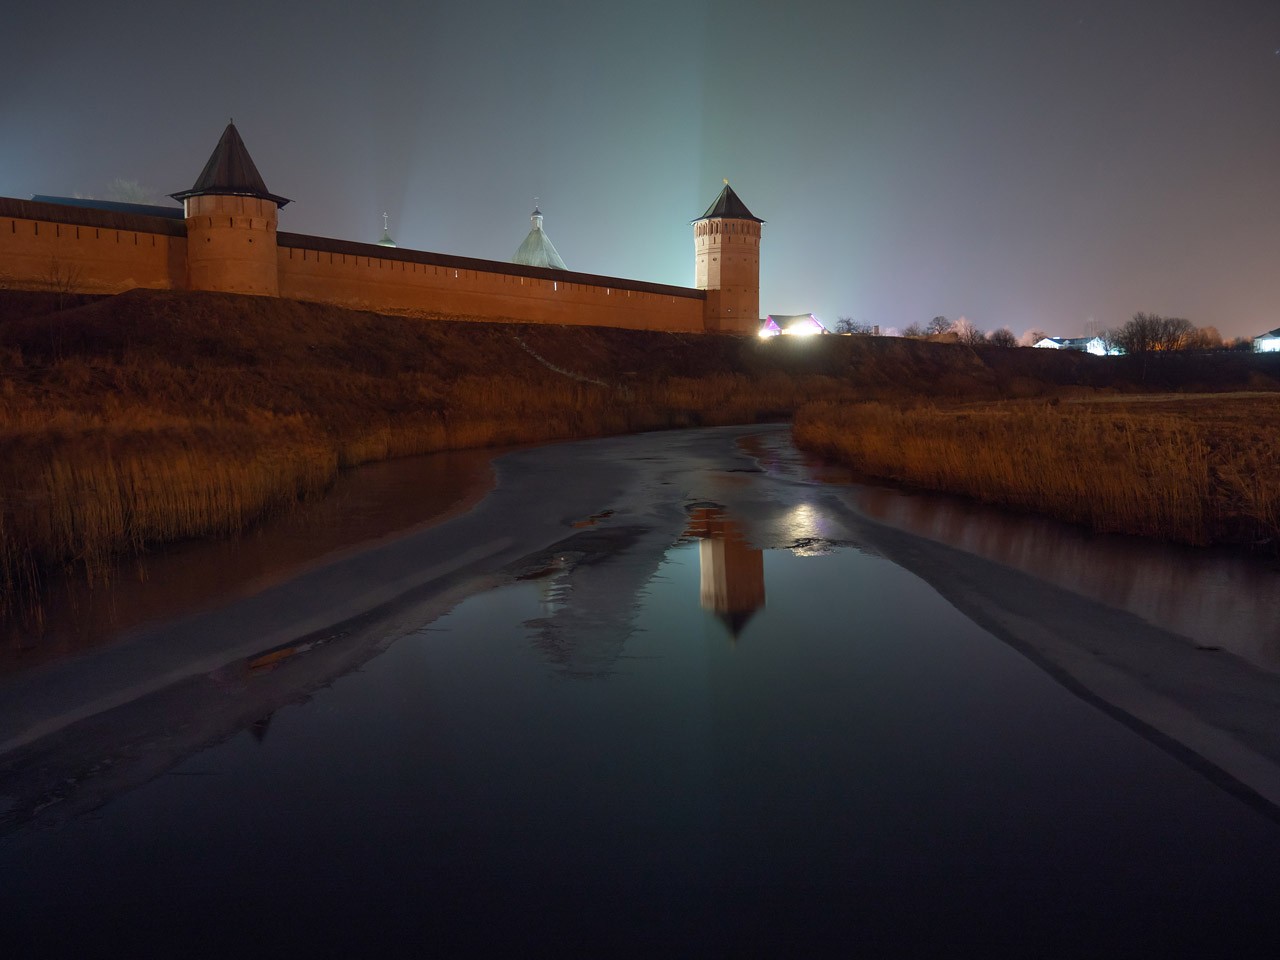 Фотография - Суздаль, январь 2020, ночной вариант, автор - Артем Кашканов